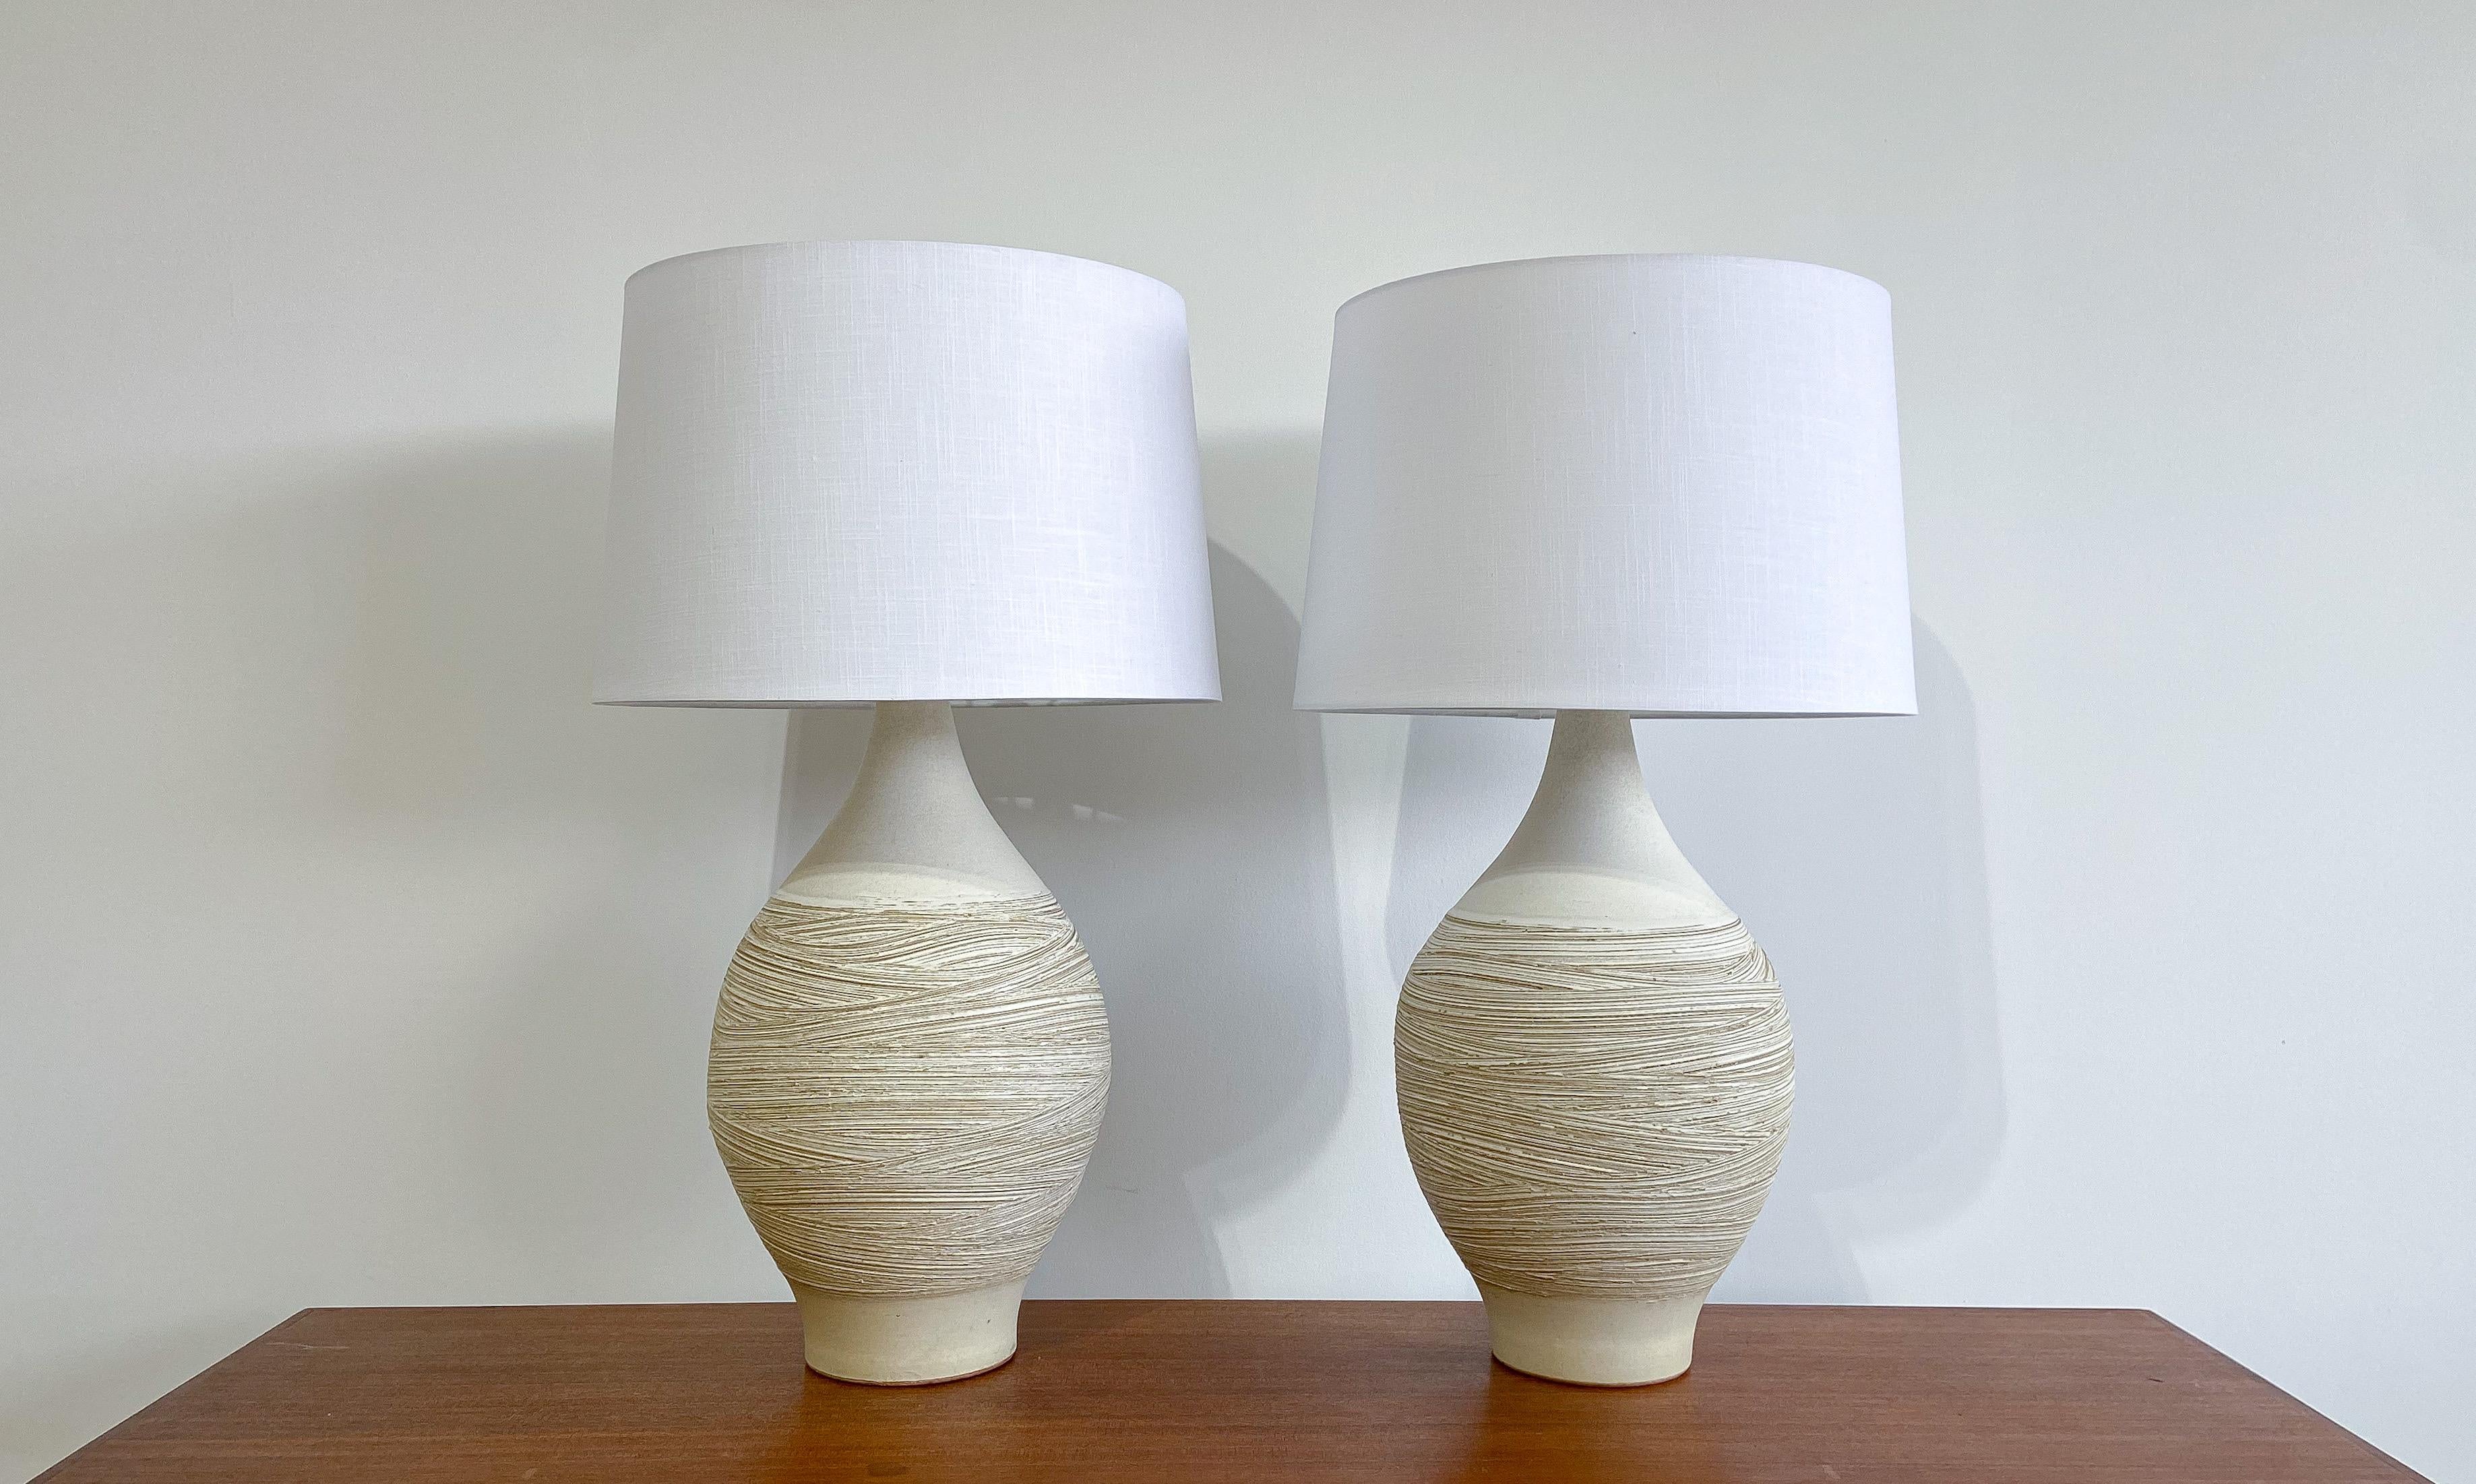 Nous vous proposons une impressionnante paire de lampes de table en céramique conçues par Lee Rosen pour Design Technics.

Chacune présente une forme de bouteille classique, avec un motif unique incisé à la main pour une esthétique et une texture